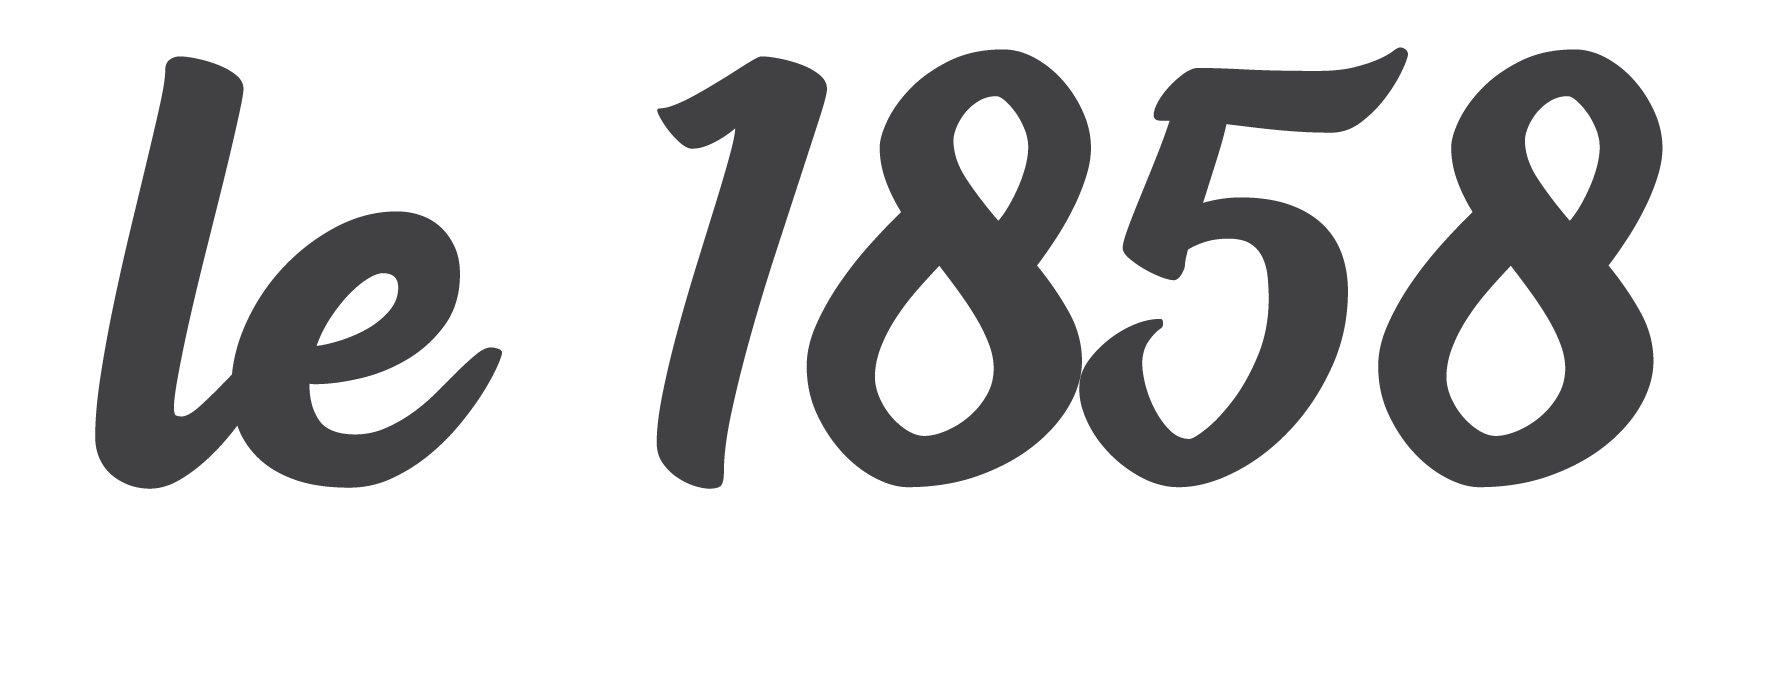 Le 1858